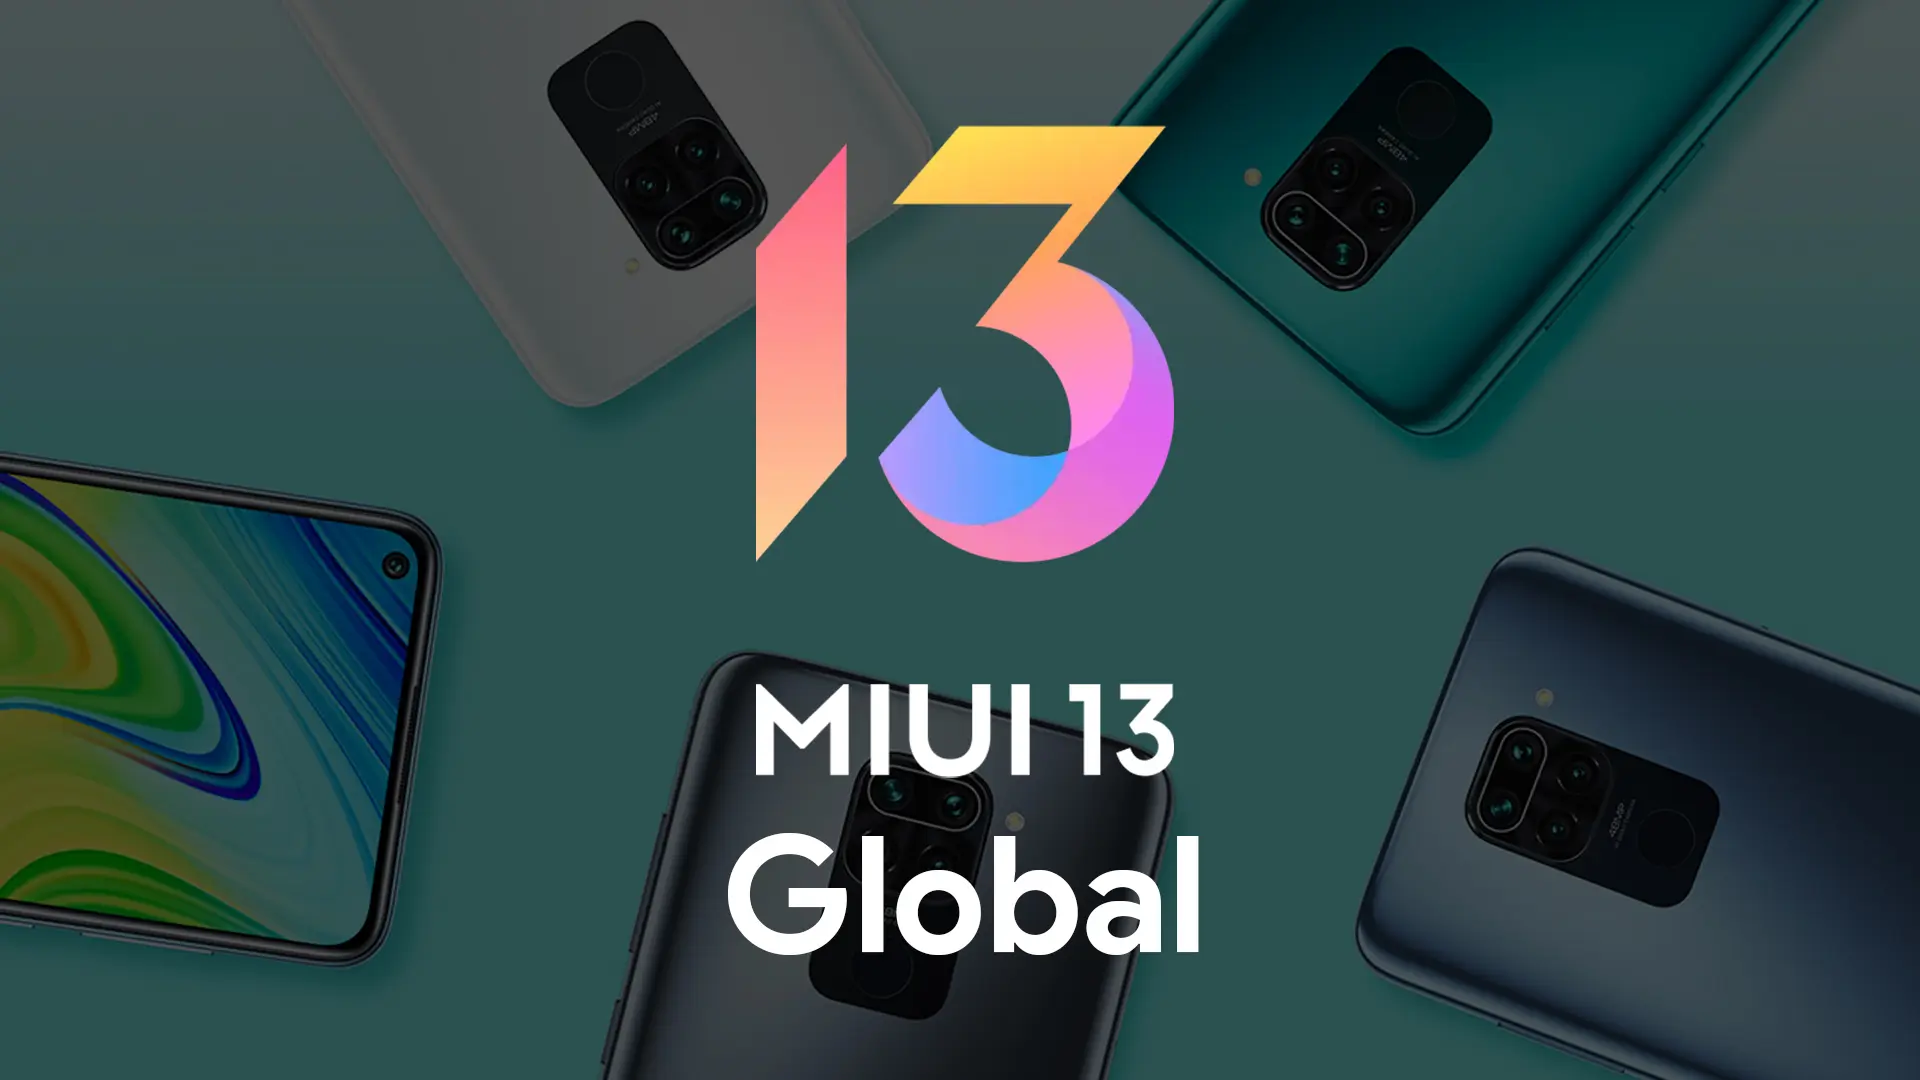 Drei weitere preisgünstige Xiaomi-Smartphones erhielten die globale Firmware MIUI 13 auf Android 12